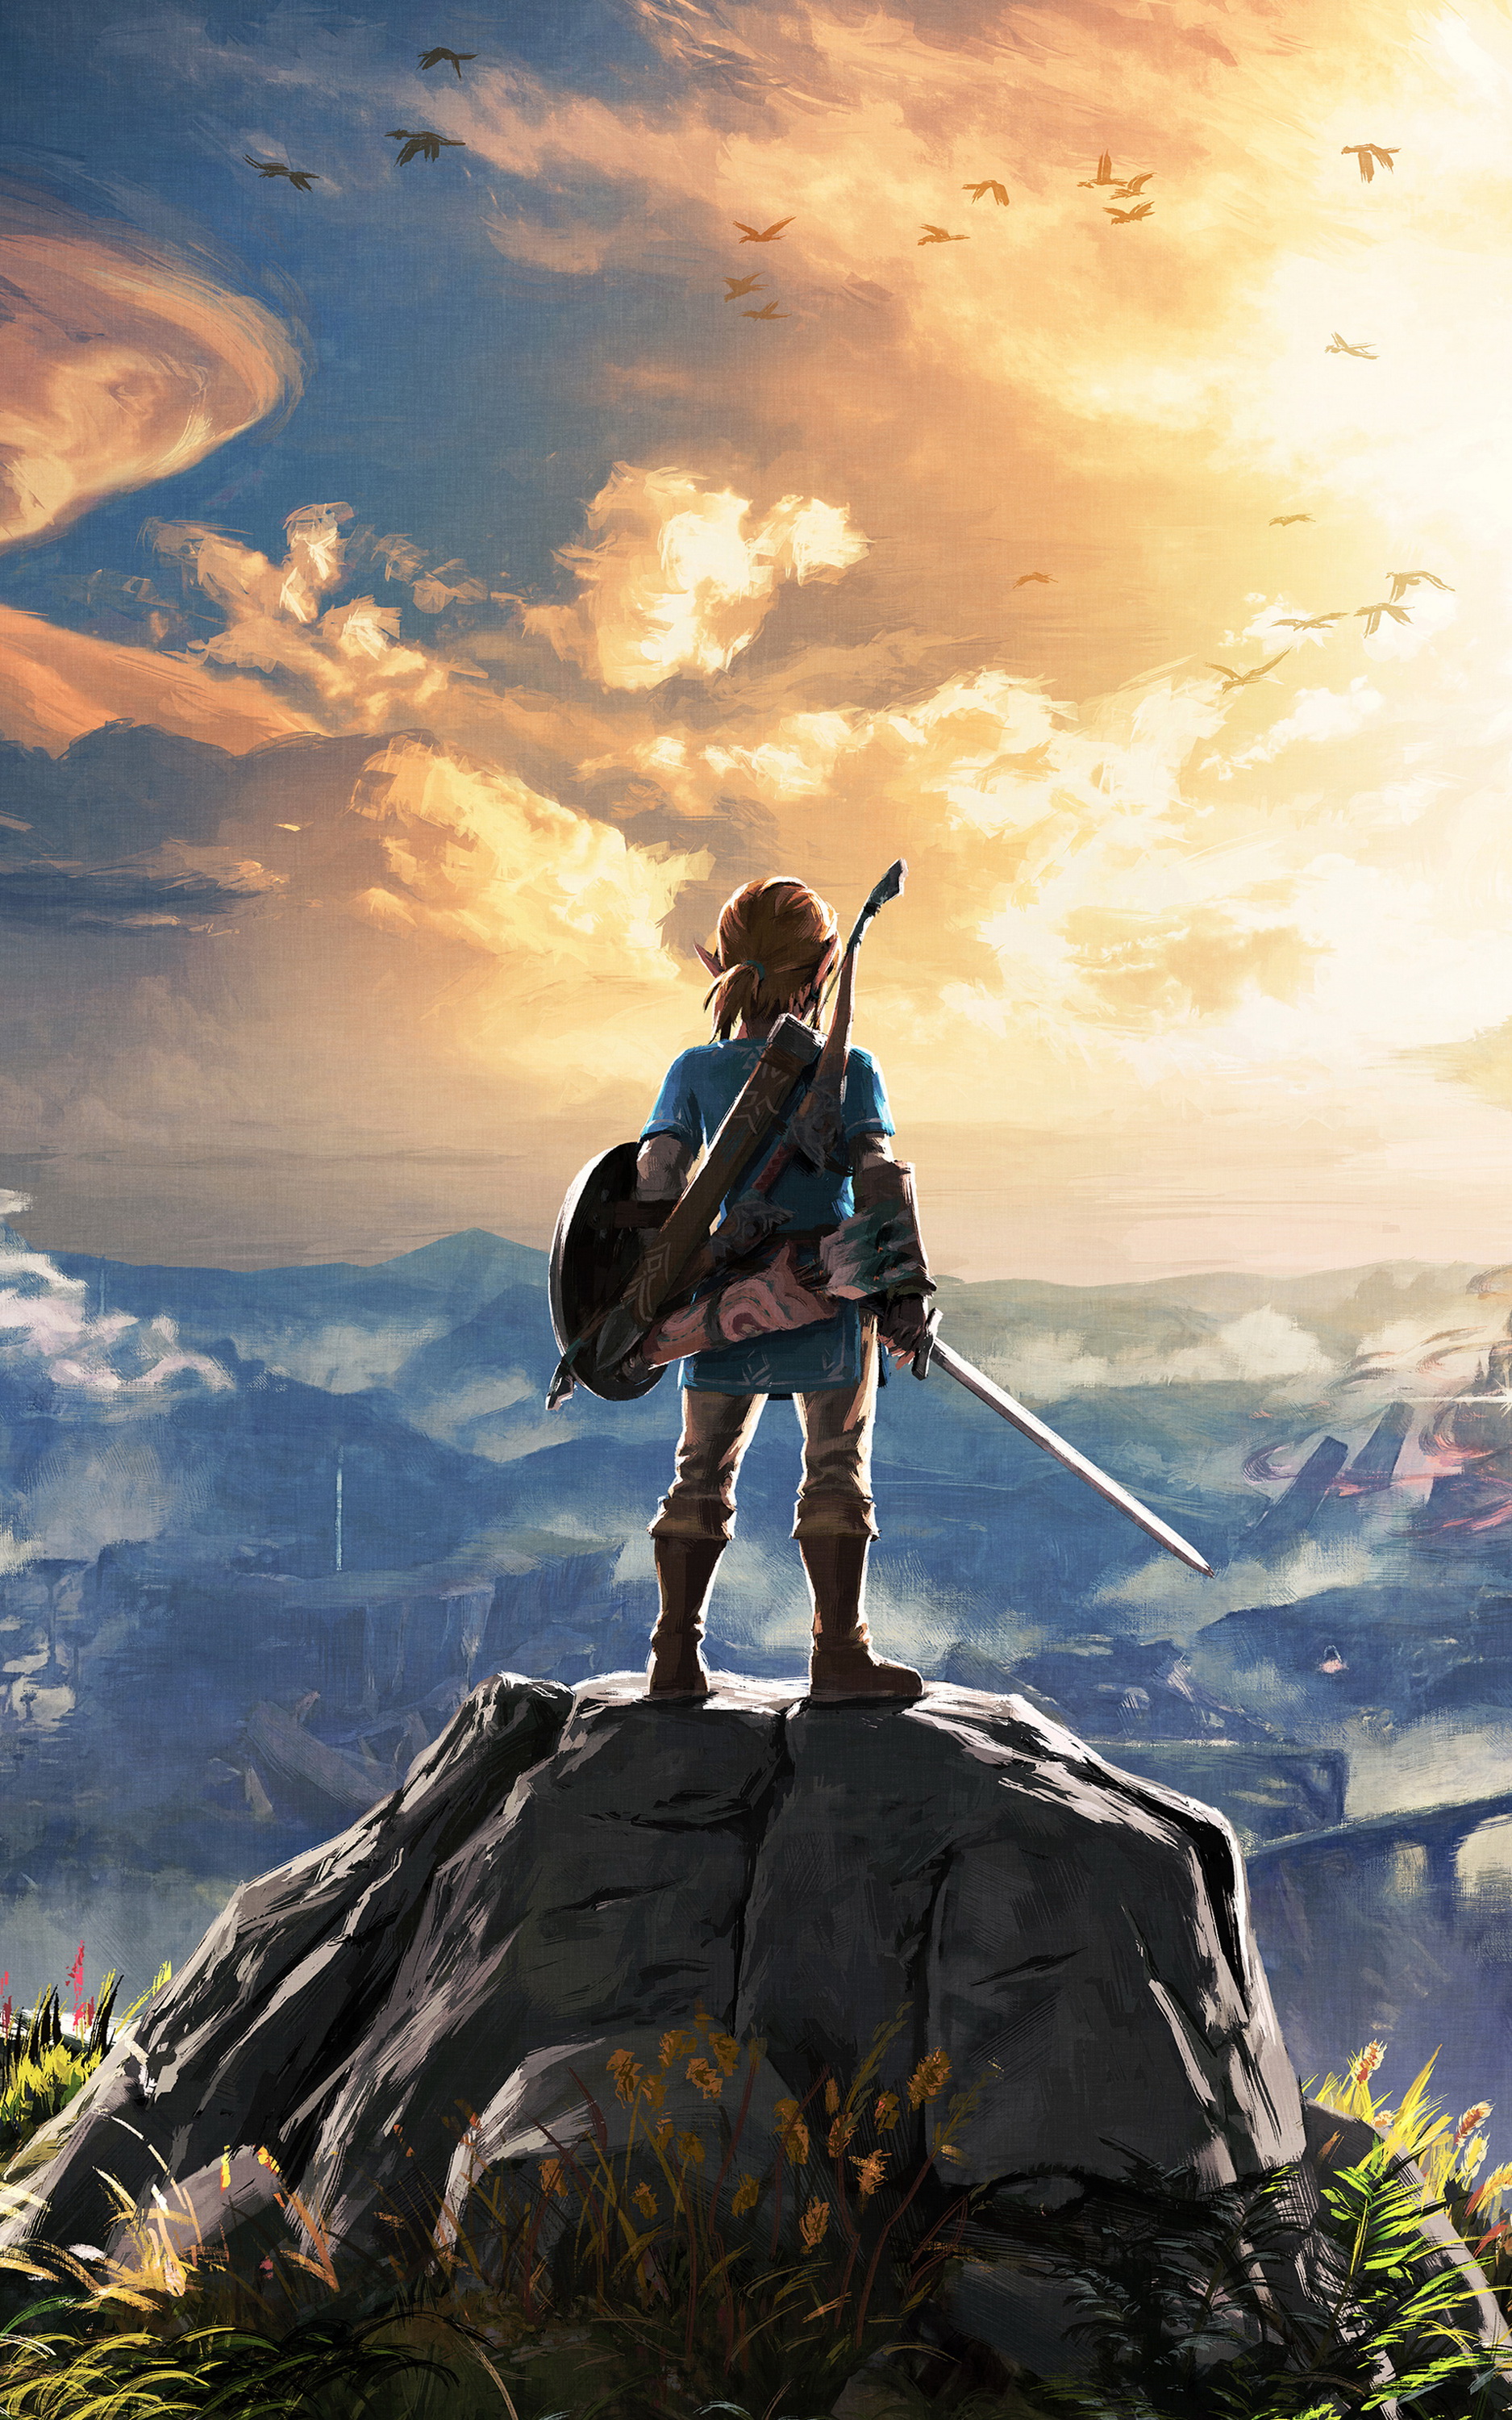 Legend of Zelda là một trong những tượng đài game nhập vai được yêu thích nhất trong lịch sử. Hãy để hình ảnh về trò chơi này đưa bạn vào một cuộc phiêu lưu vô cùng thú vị và hấp dẫn. Điều này sẽ thực sự khiến các fan của Legend of Zelda \